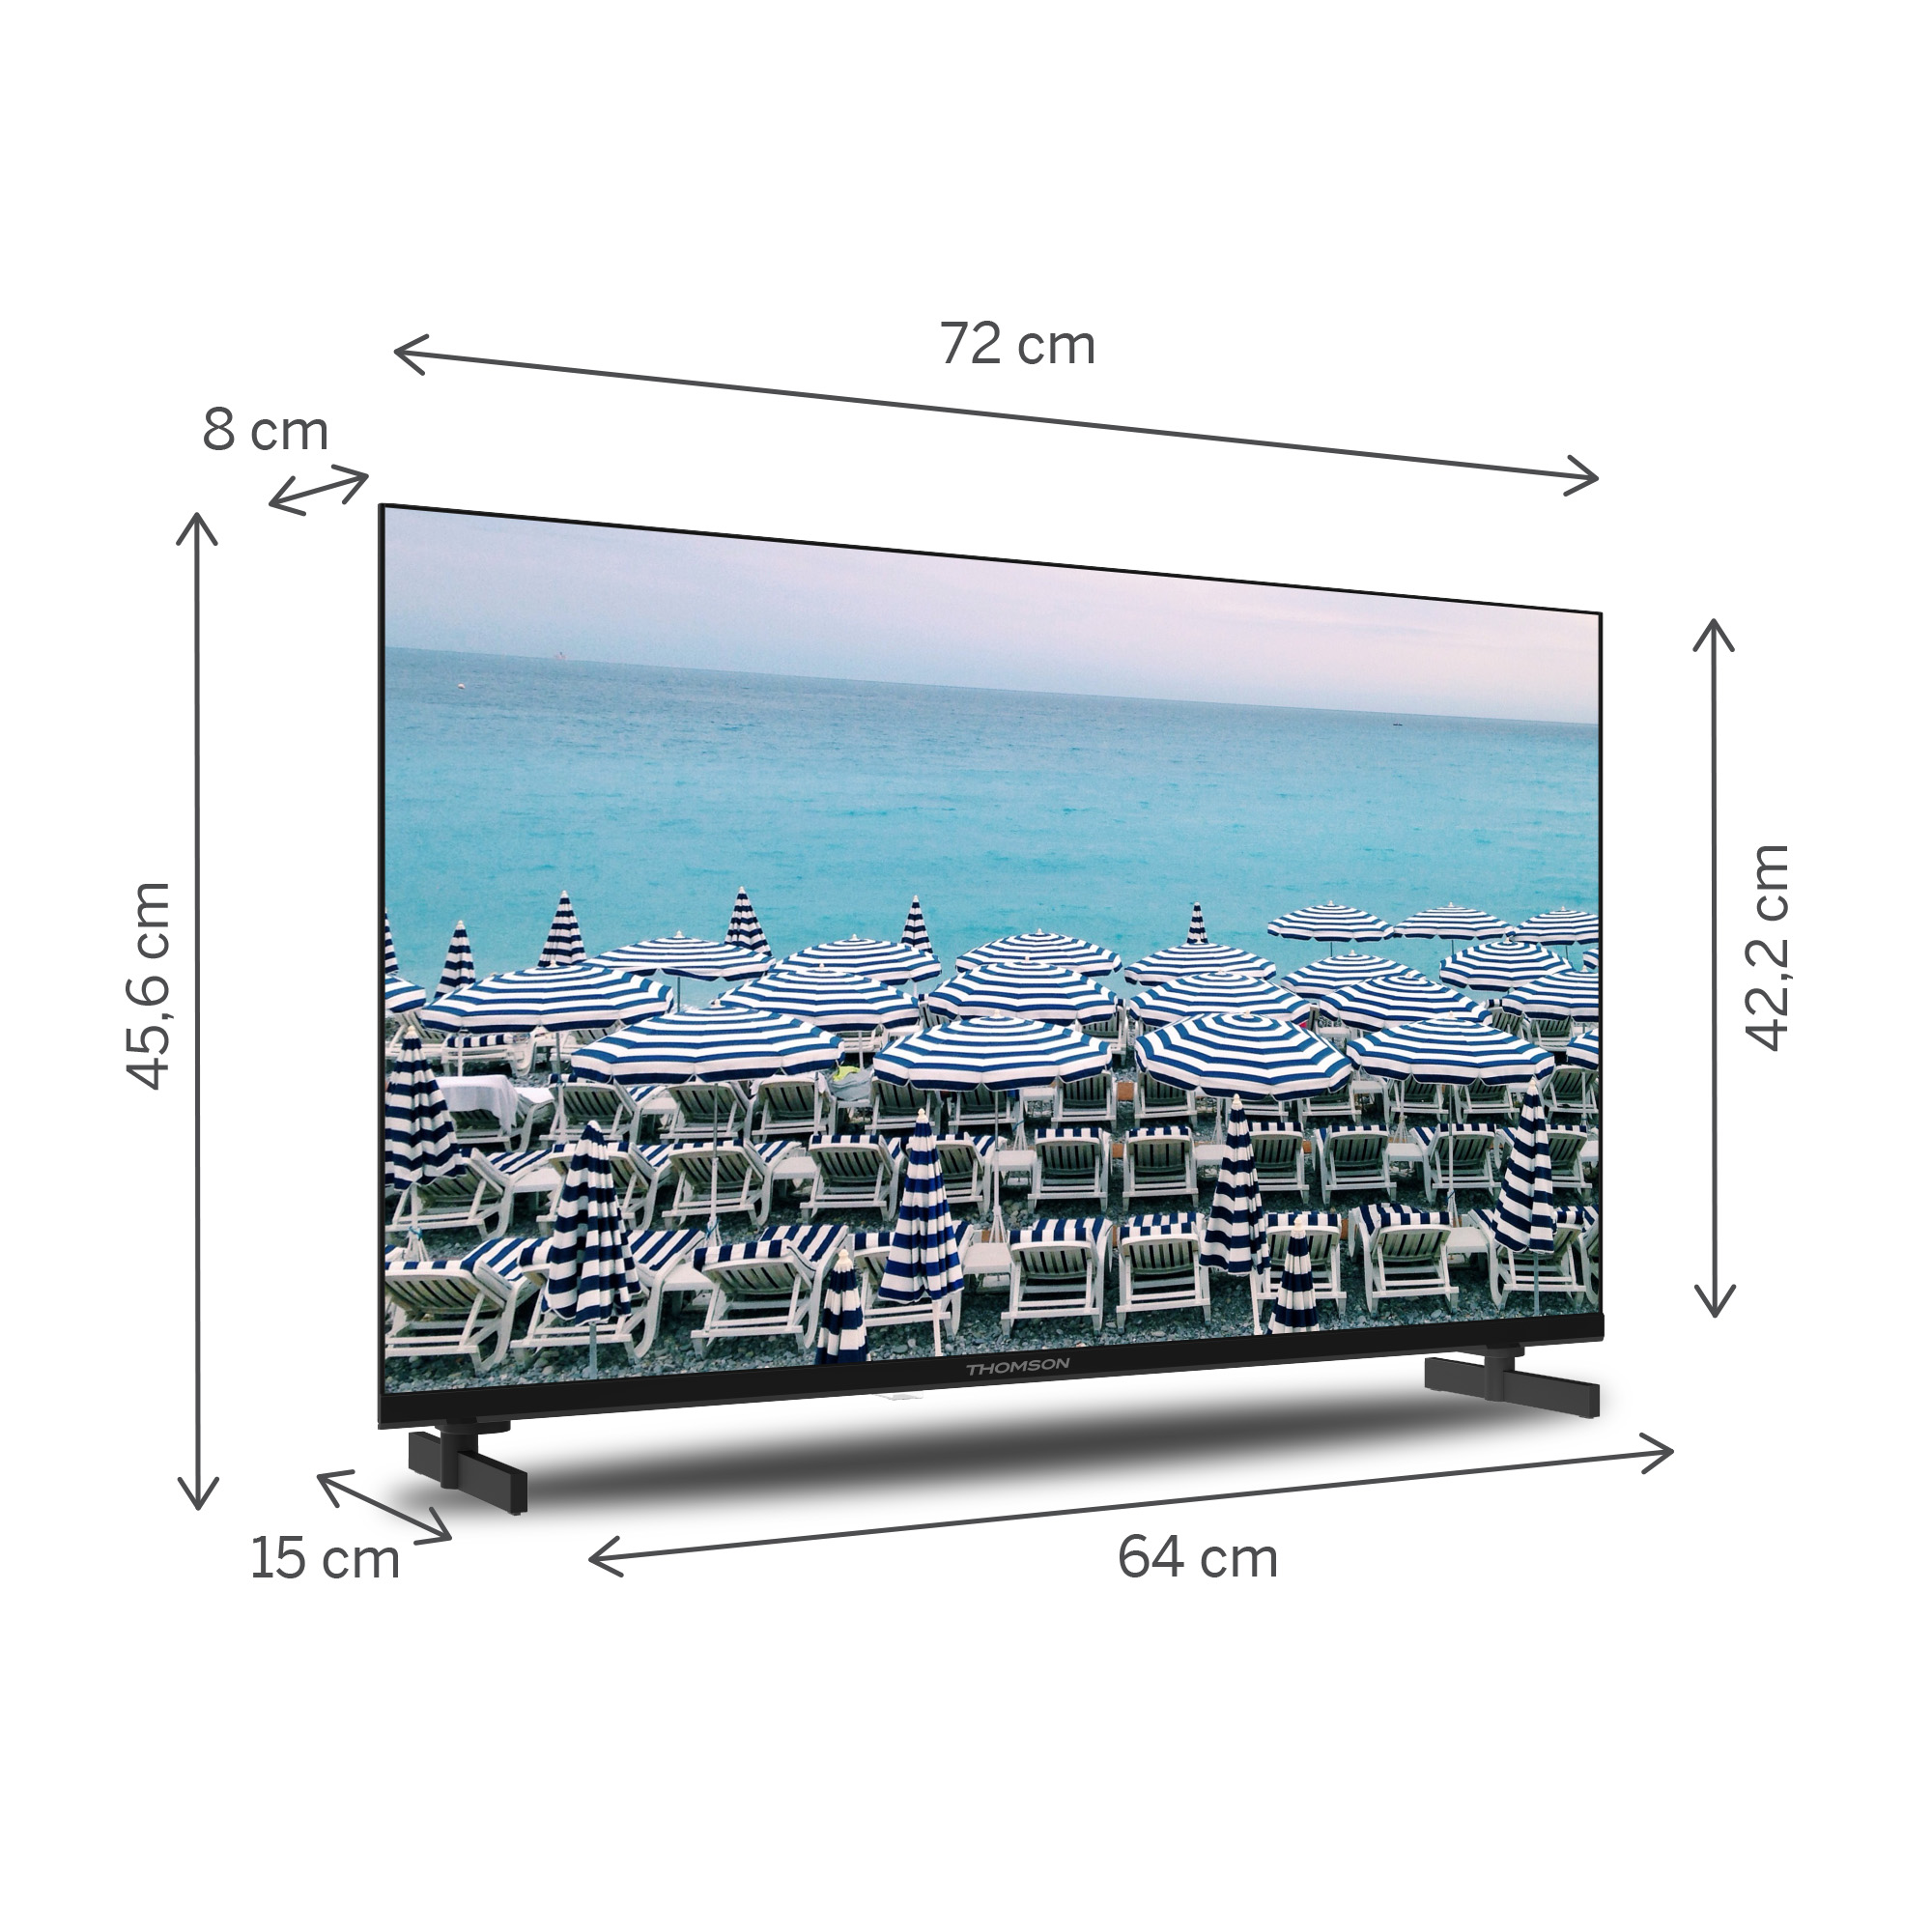 THOMSON cm, / 81 HD) LED Zoll TV 32HD2S13 32 (Flat,